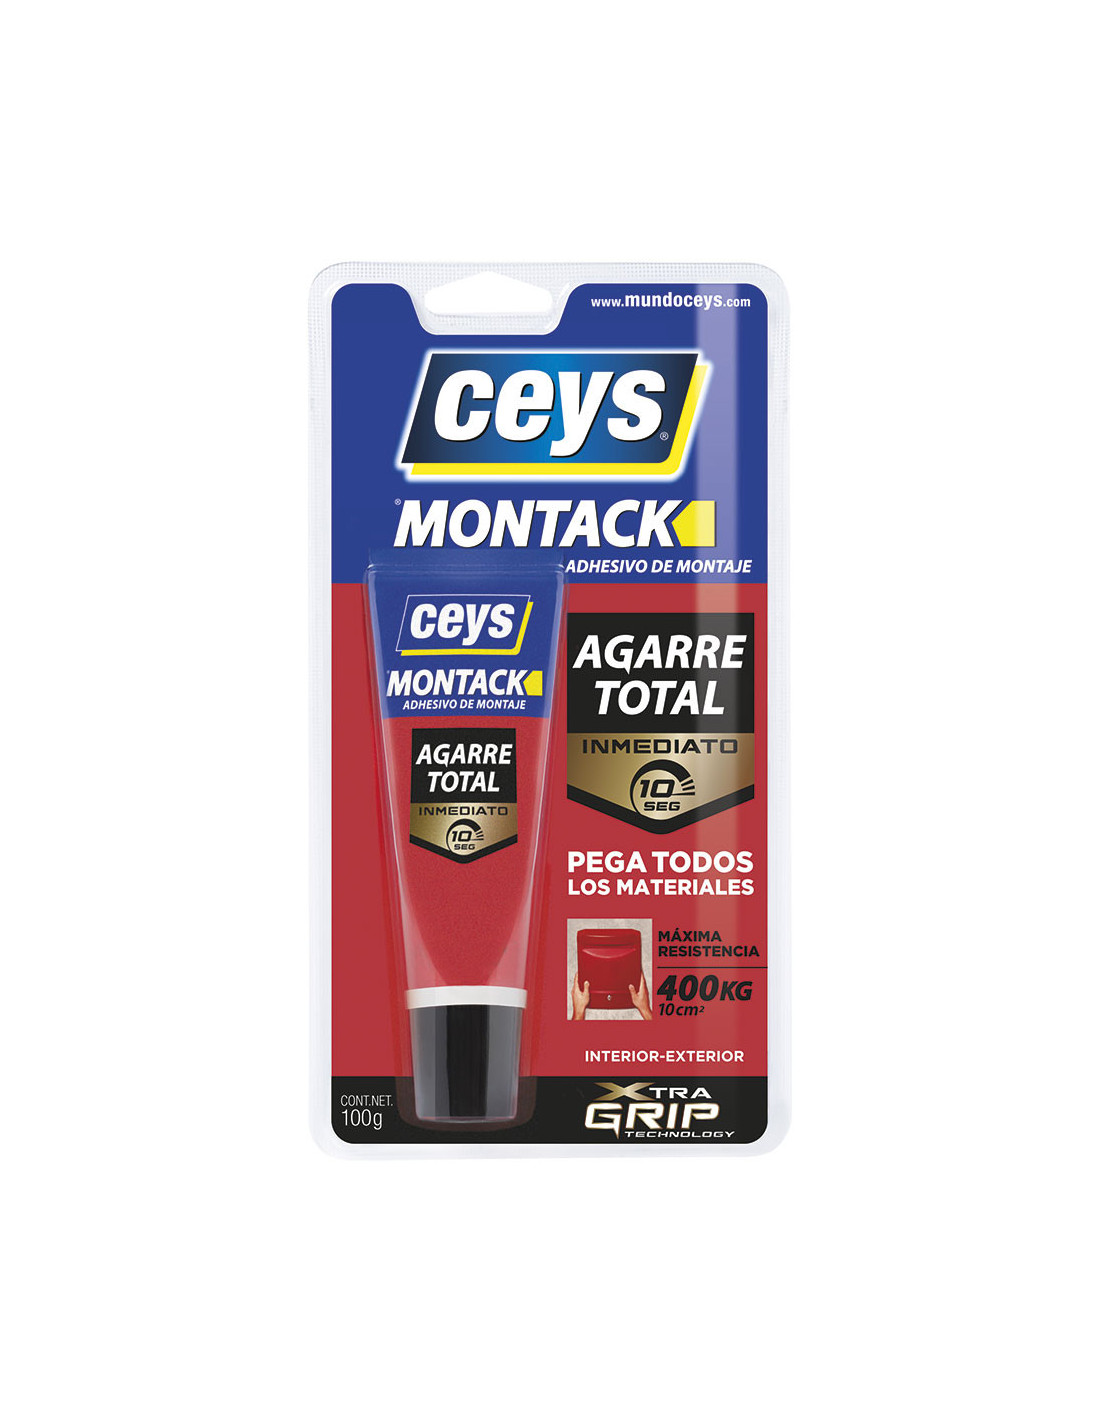 Ceys montack inmeato blister 100g 507264